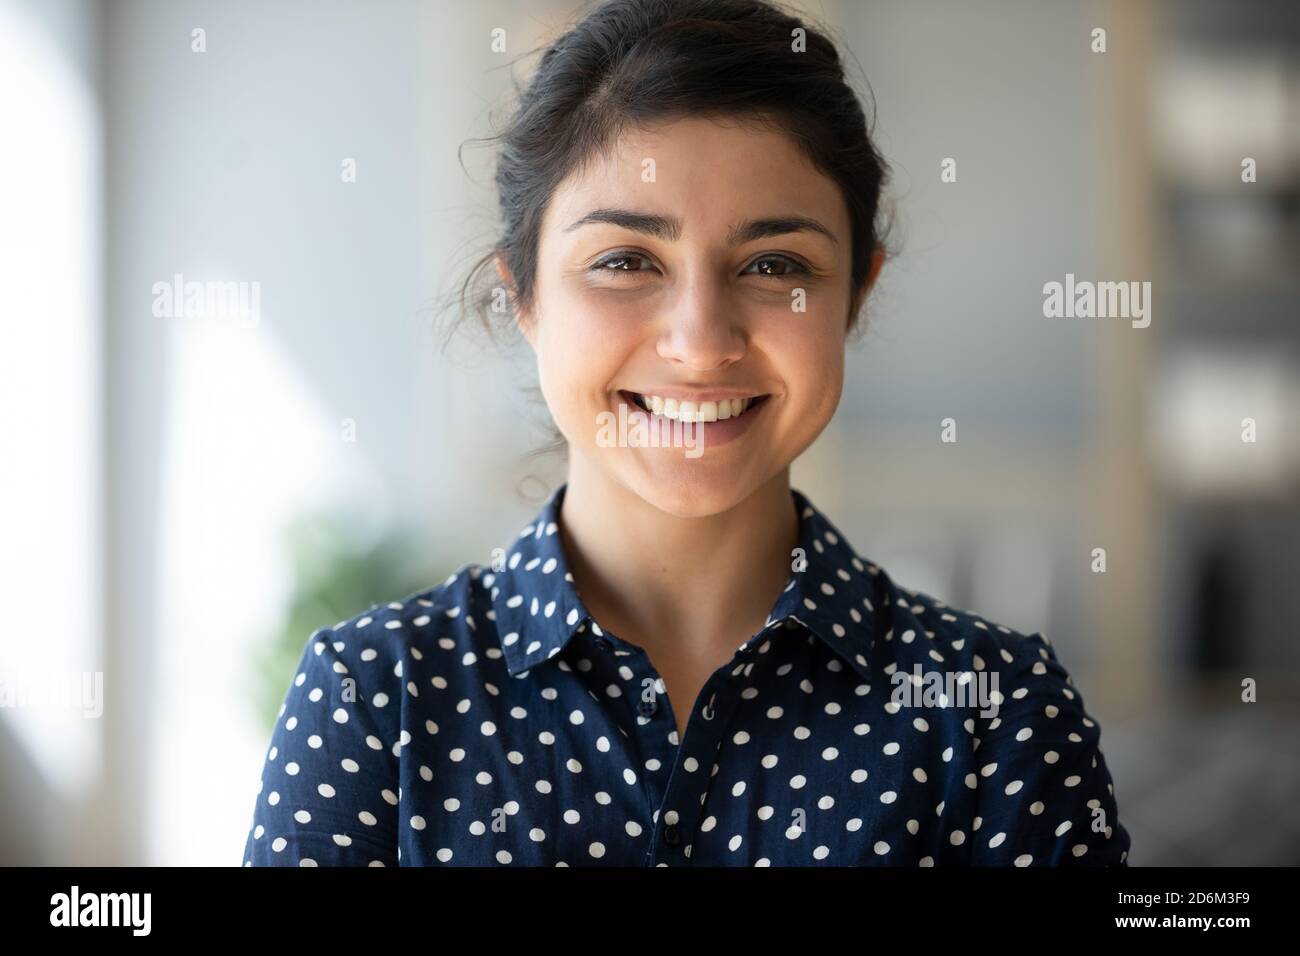 Headshot ritratto attraente sorridente ragazza indiana guardando la macchina fotografica Foto Stock